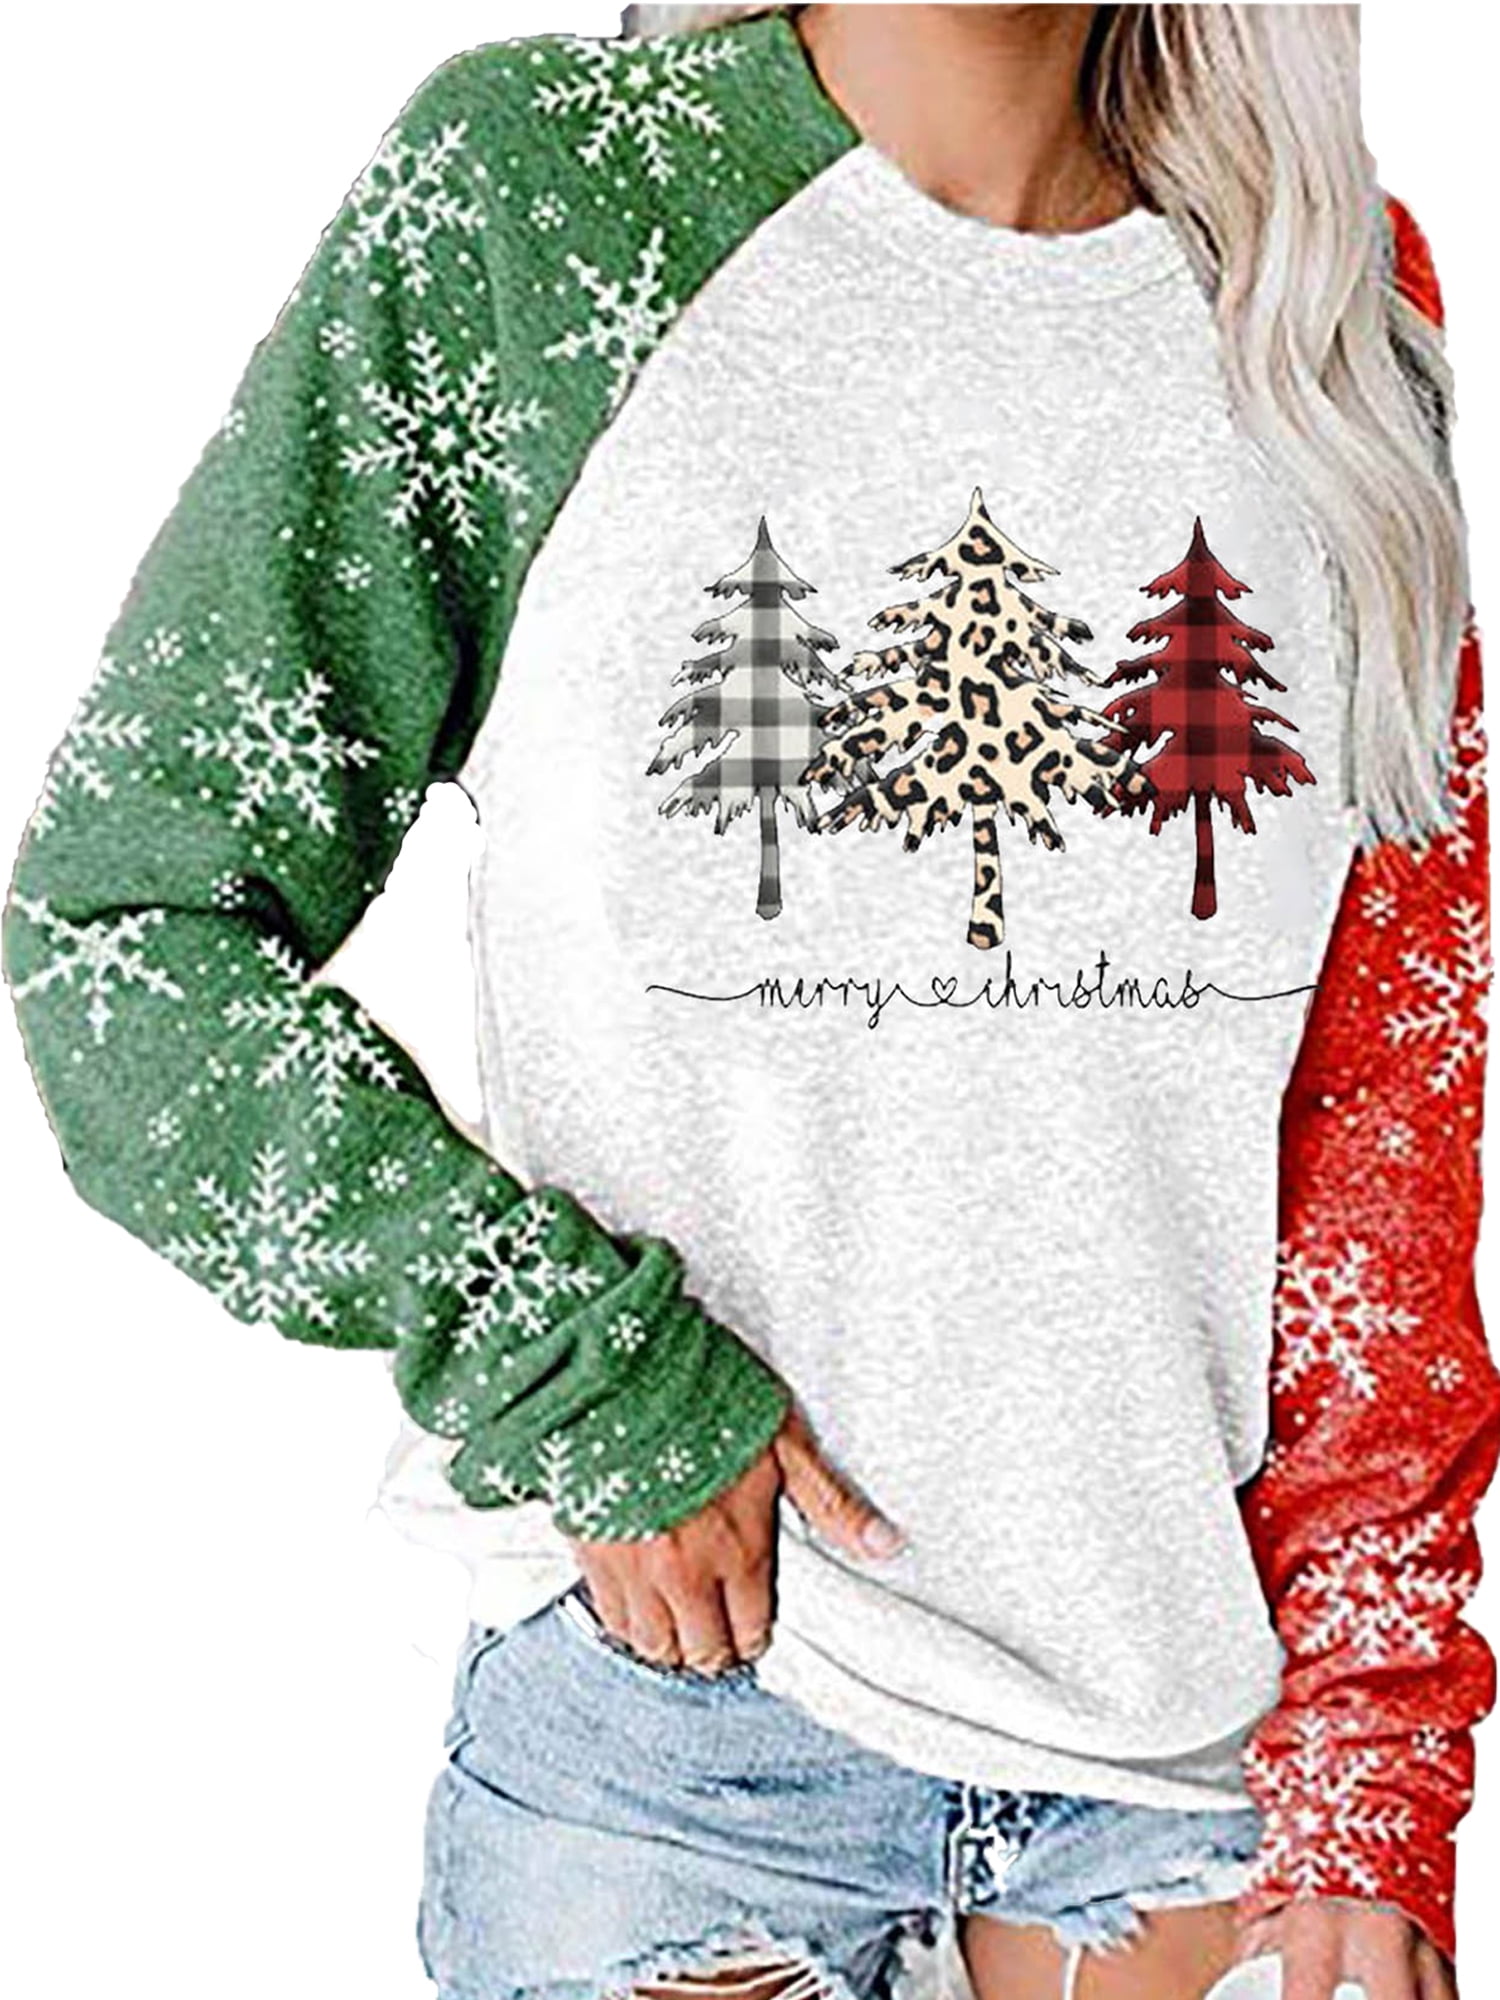 Womens Christmas shirt Farm Fresh Christmas Trees Vintage Distressed Sweatshirt Farm Christmas sweatshirt Cozy Sweater Holiday shirt